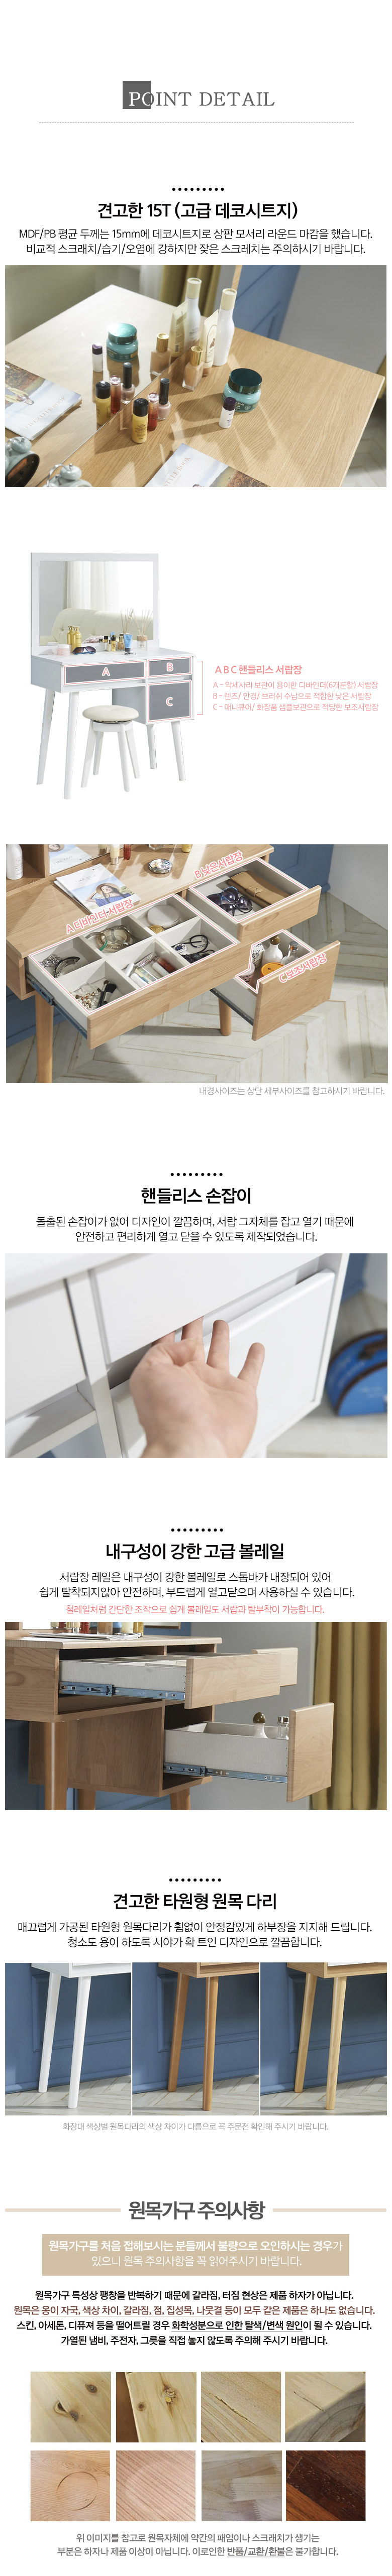 거울 B형 입식화장대 의자포함/원룸 서랍화장품정리대